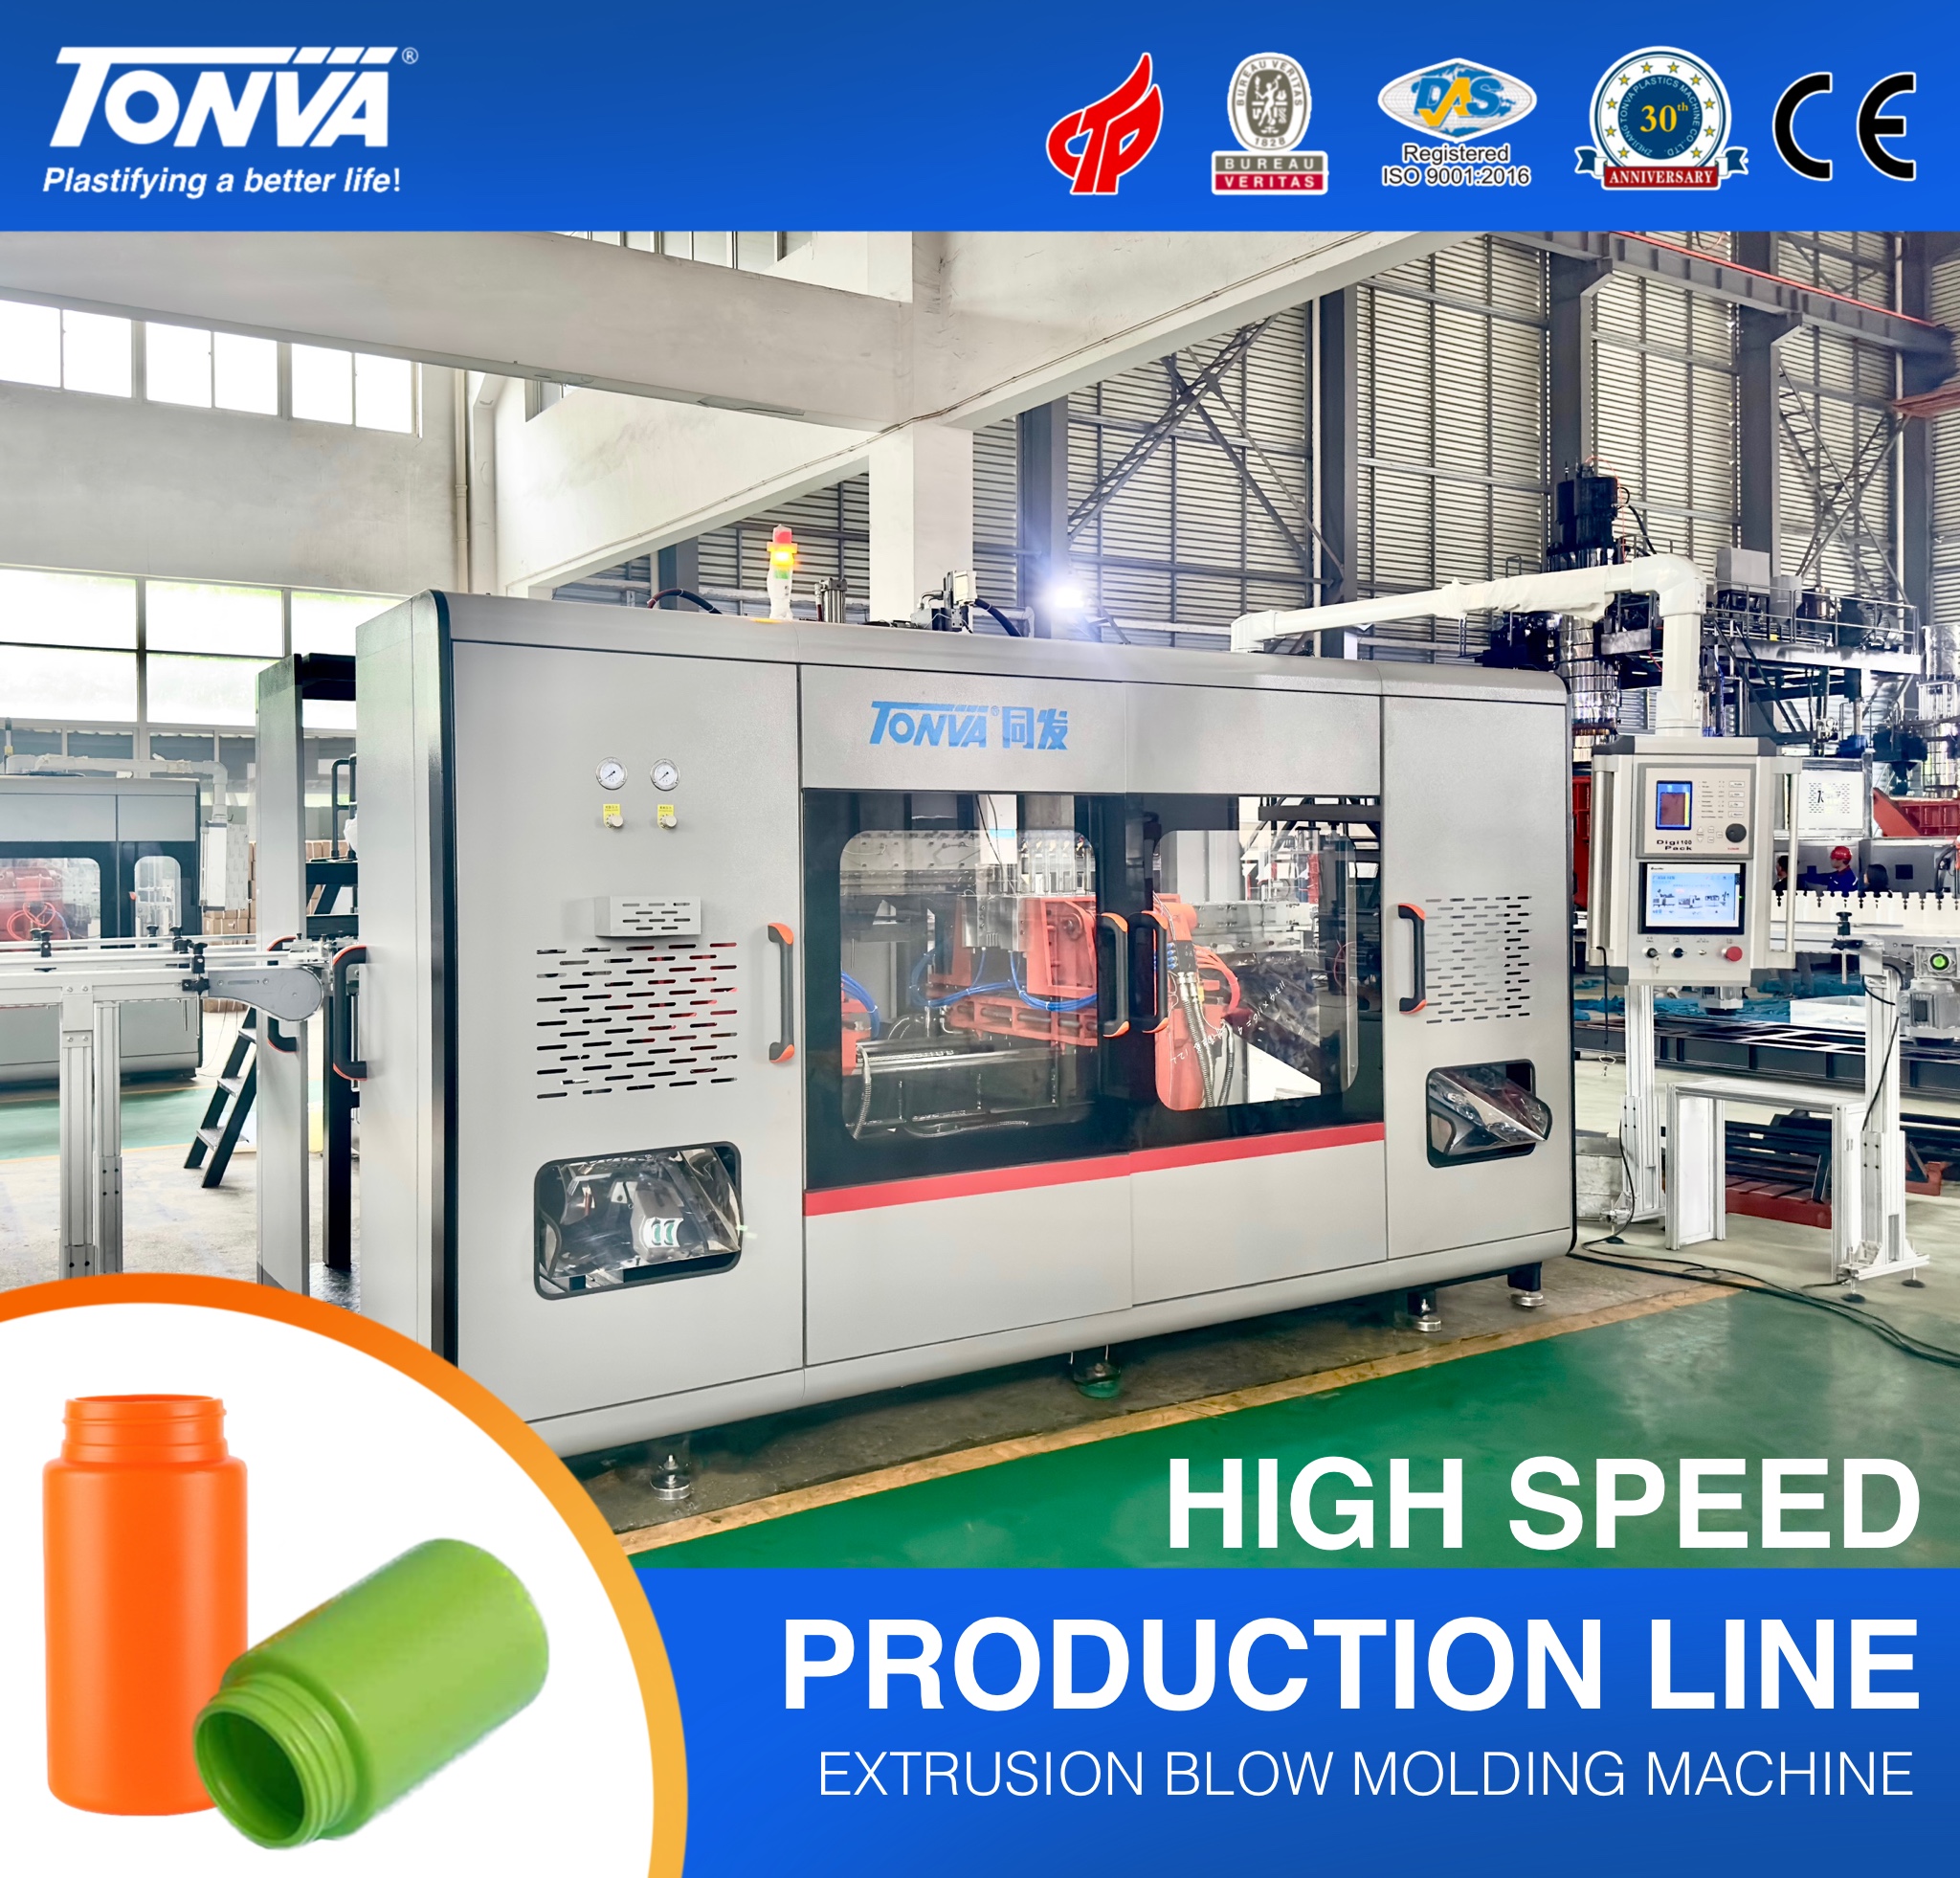 TONVA Hochleistungs-Blasformmaschine mit 10 Kavitäten für die Produktionslinie für Kunststoffflaschen. Empfohlenes Bild